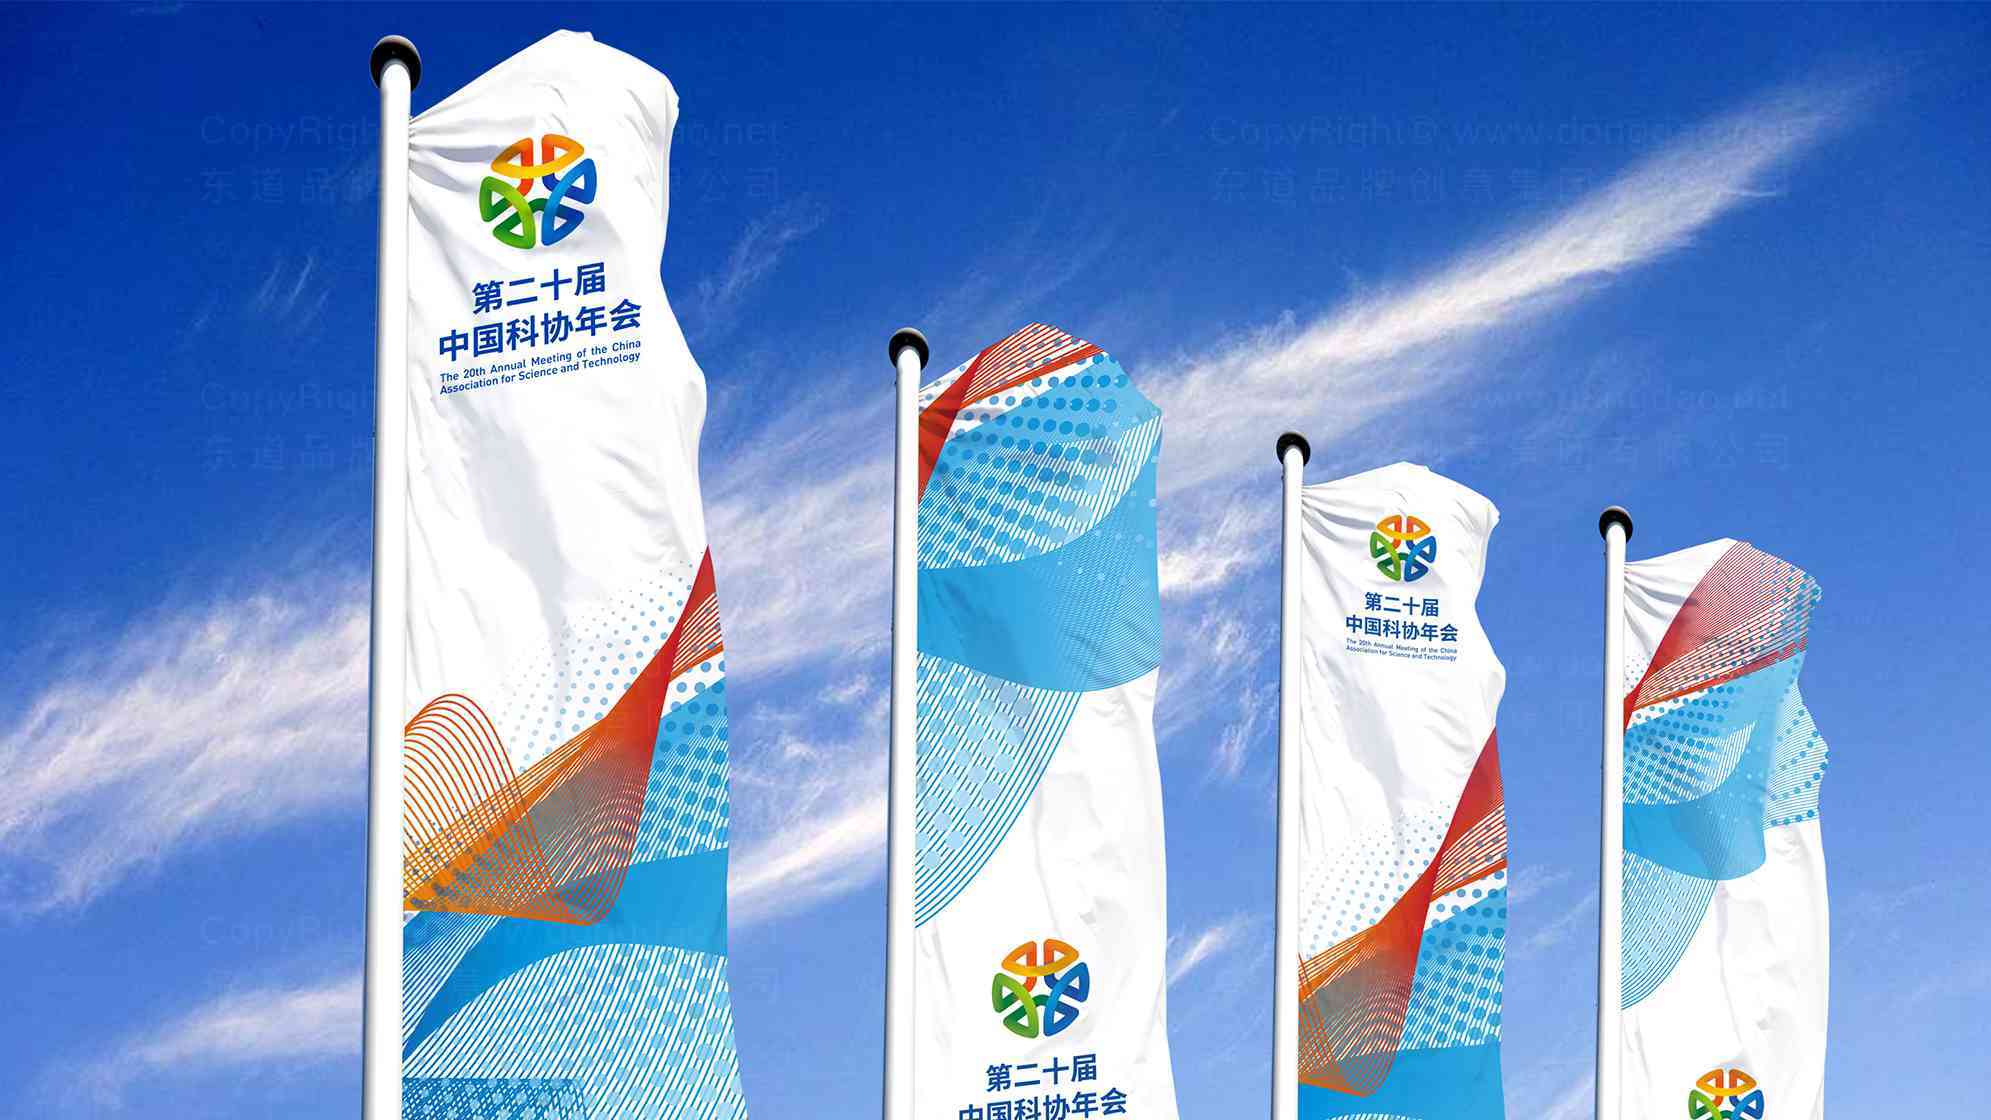 中国科协年会logo设计图片素材_1